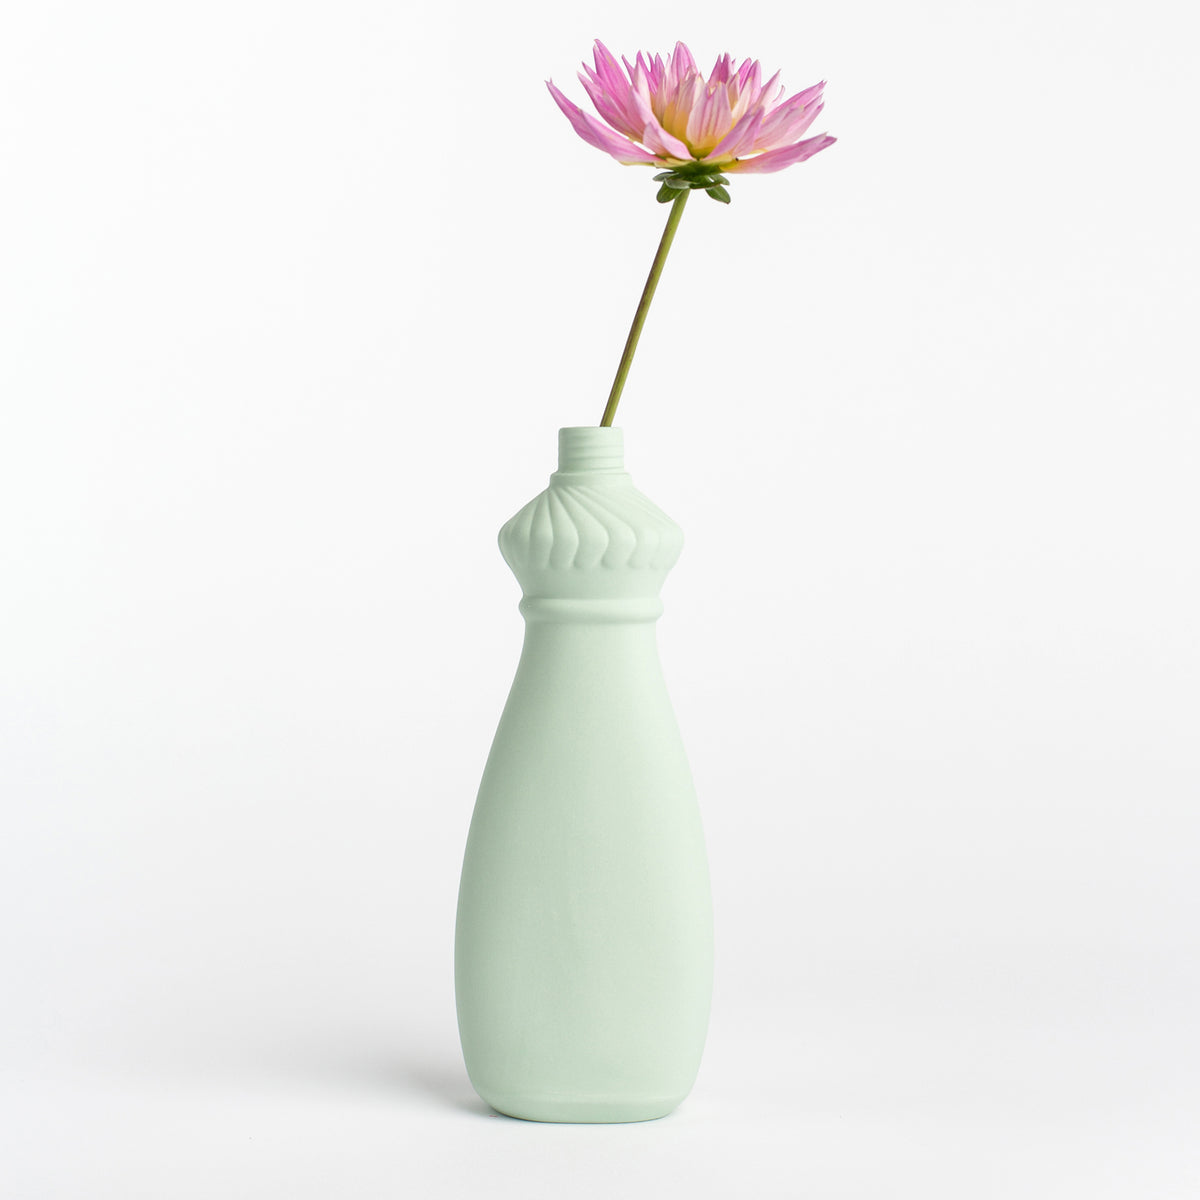 Porzellan-Vase #15 von Foekje Fleur bei Wilhelm die 3.